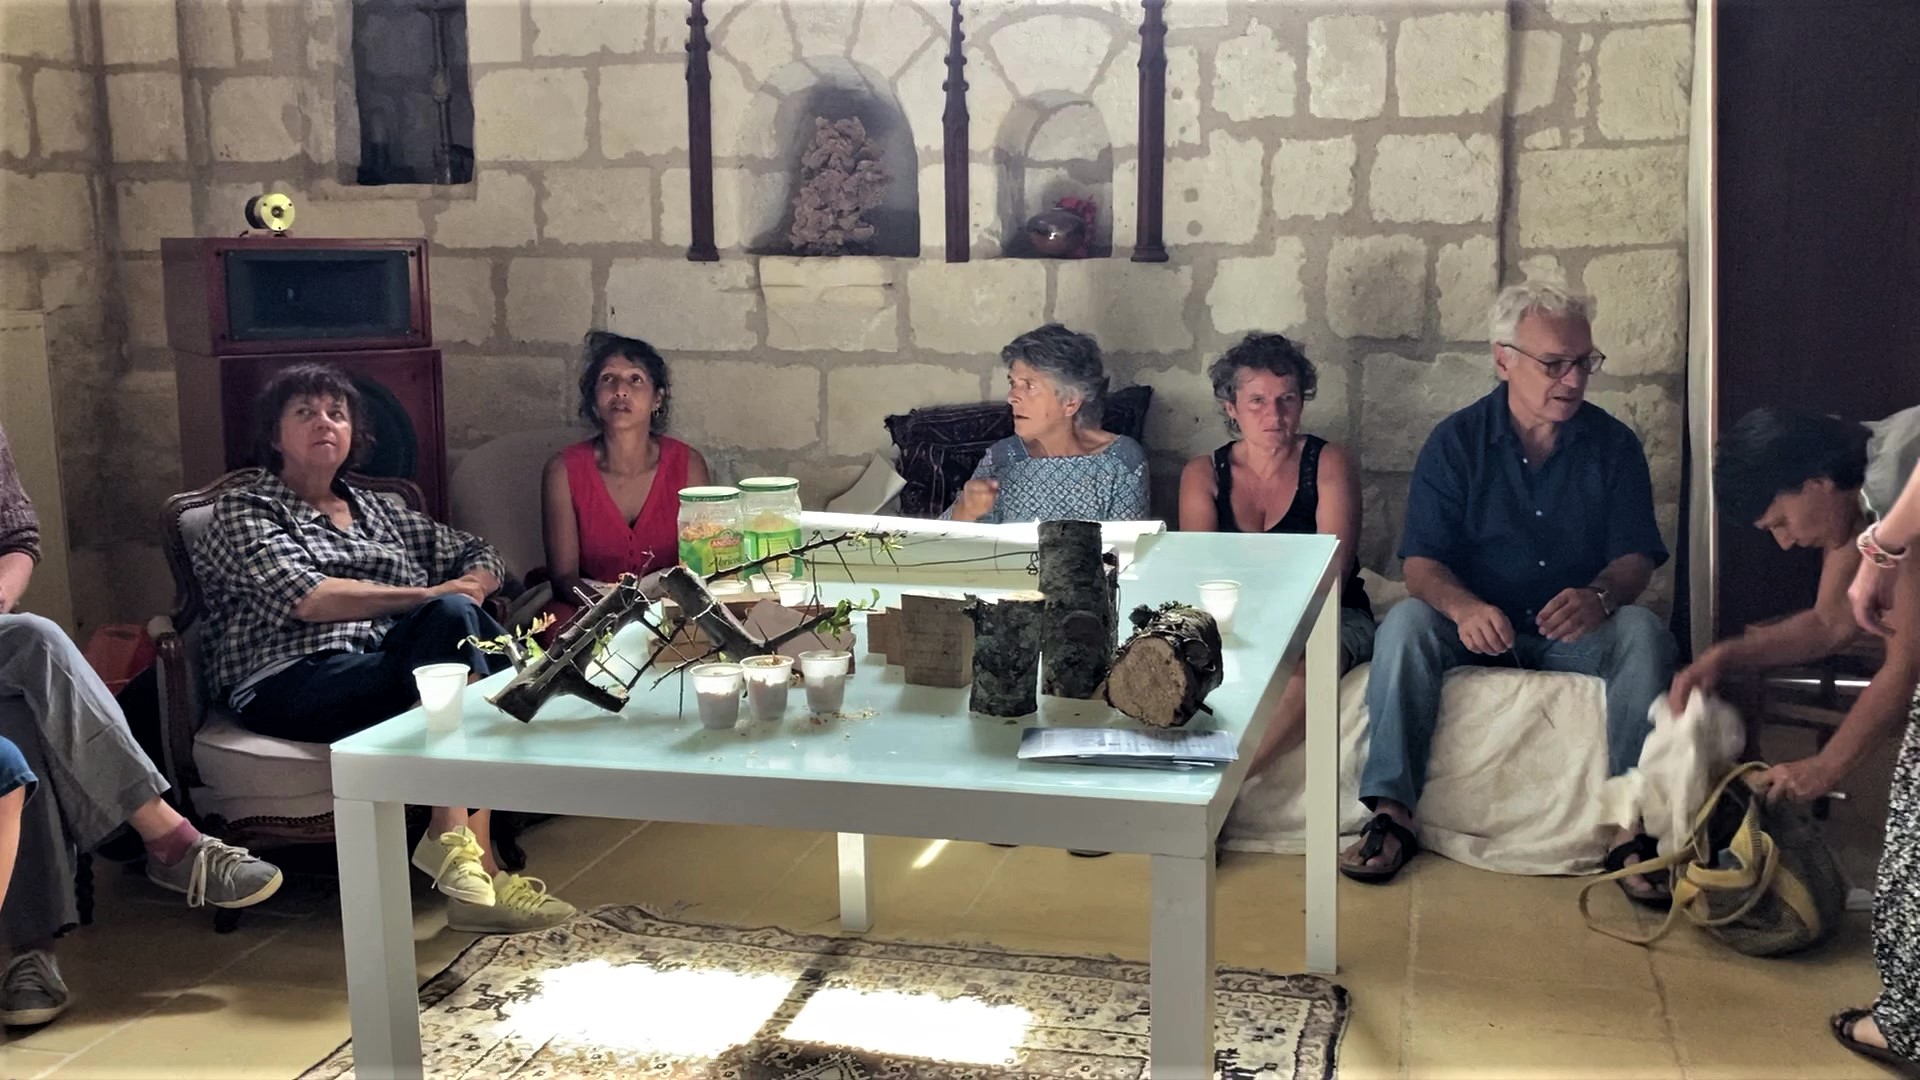 Un groupe de participants autour d'une table basse dans une salle aux murs de pierres. Sont disposés sur la table des éléments à toucher en matière végétale (bûches, constructions en branches etc.).